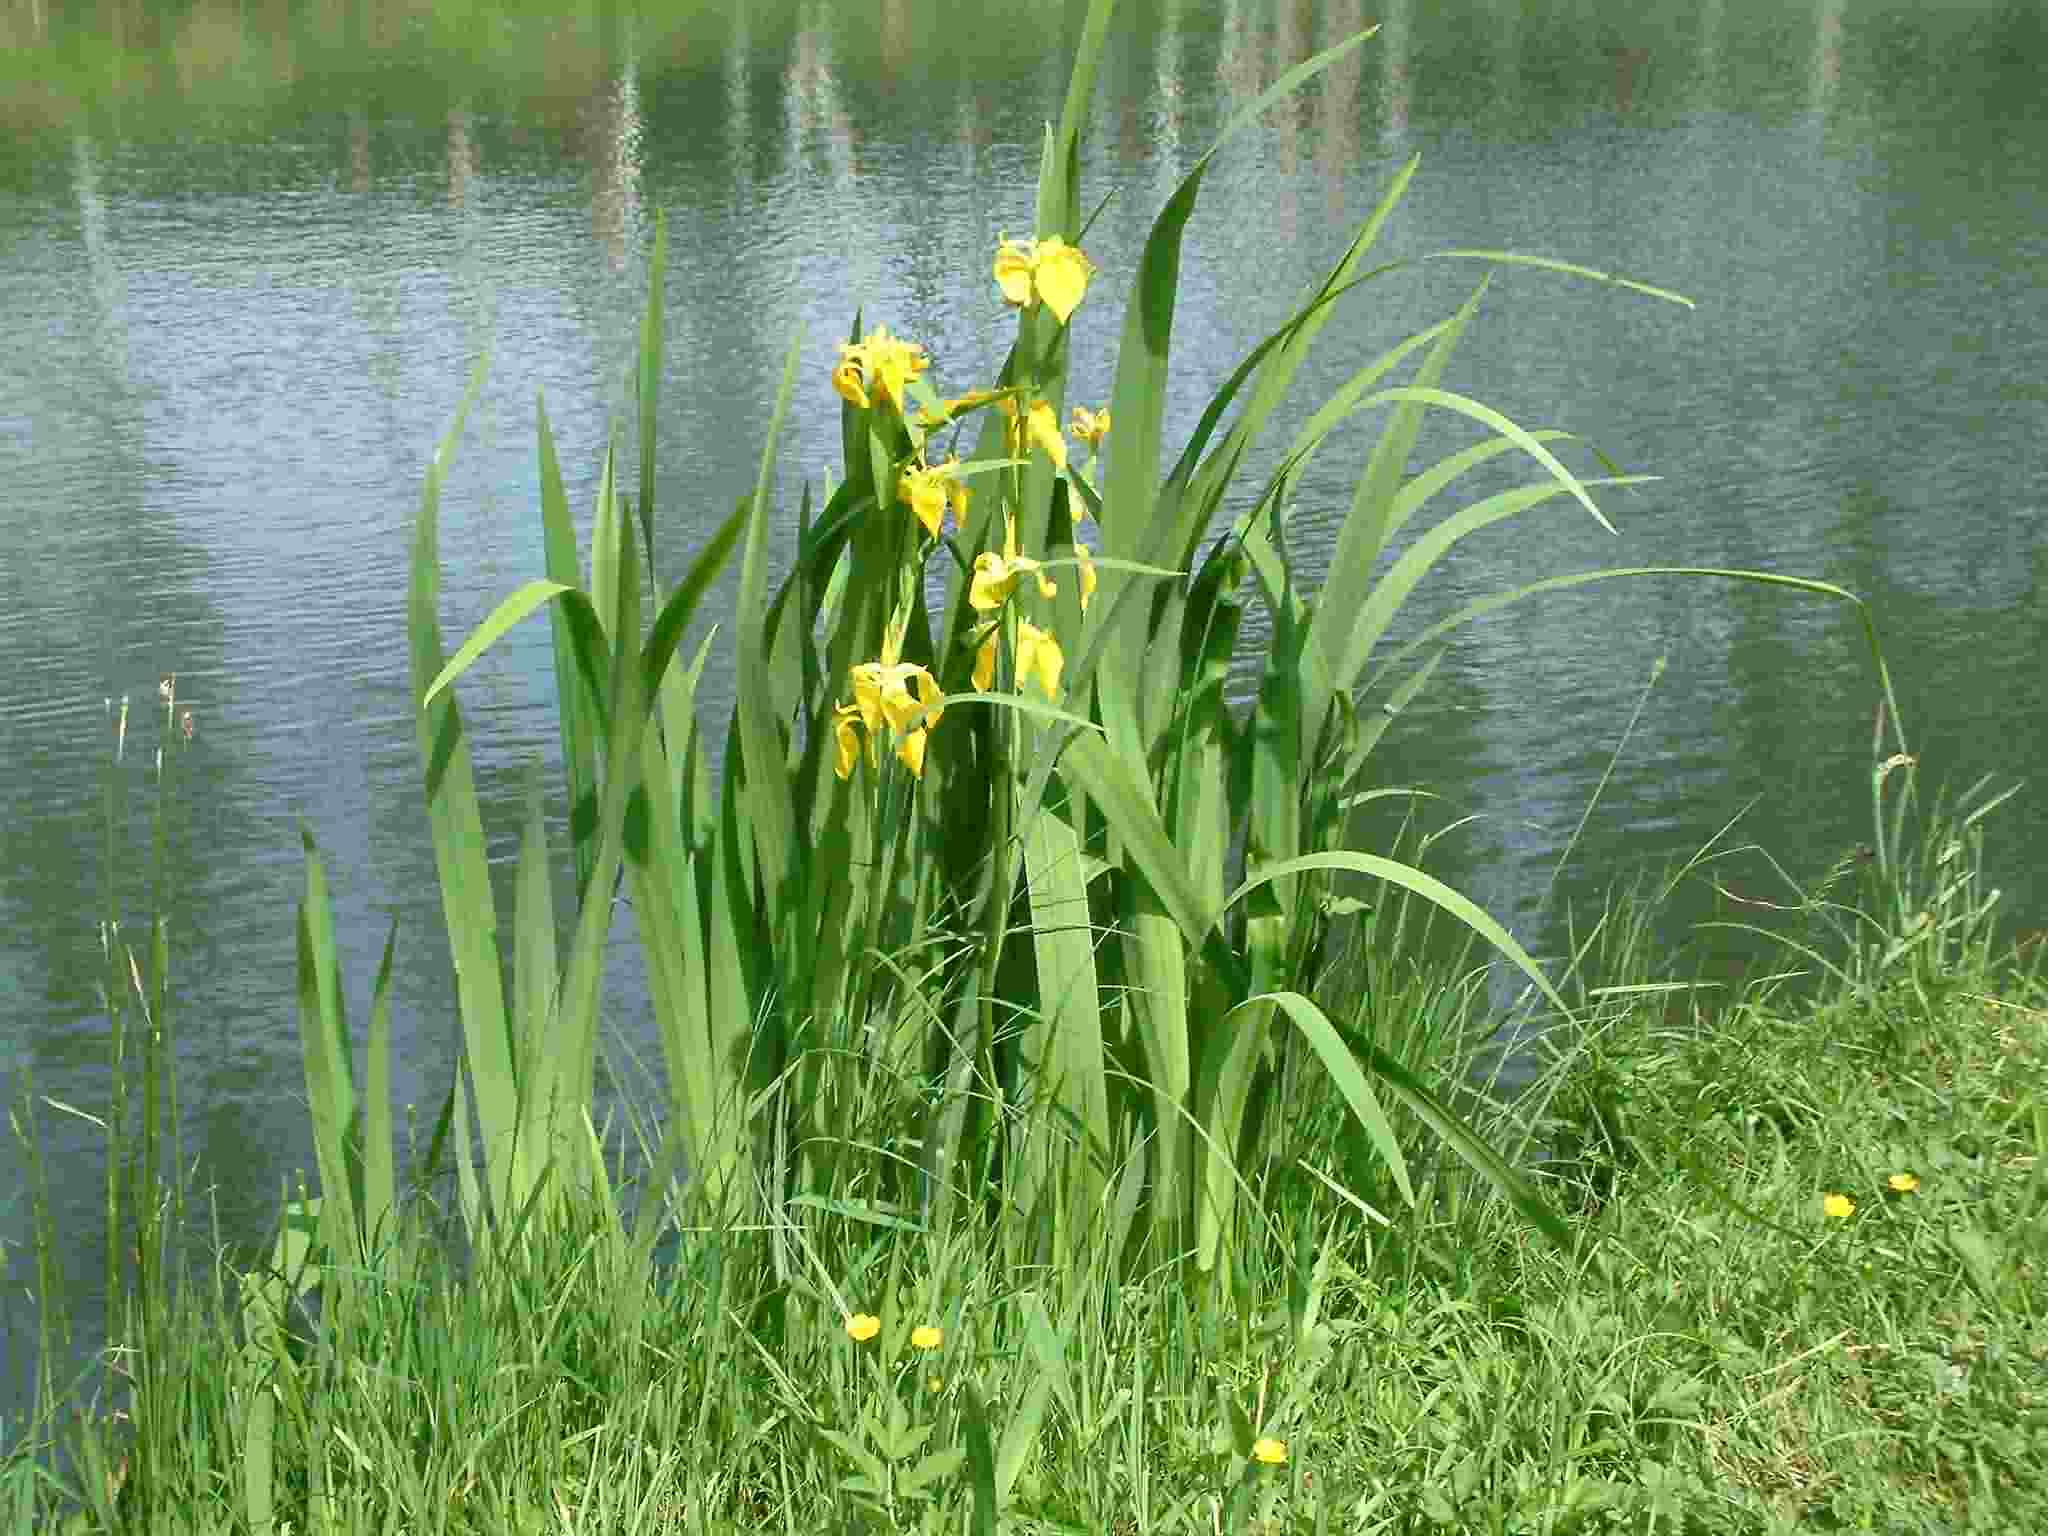 Iris pseudacorus 1